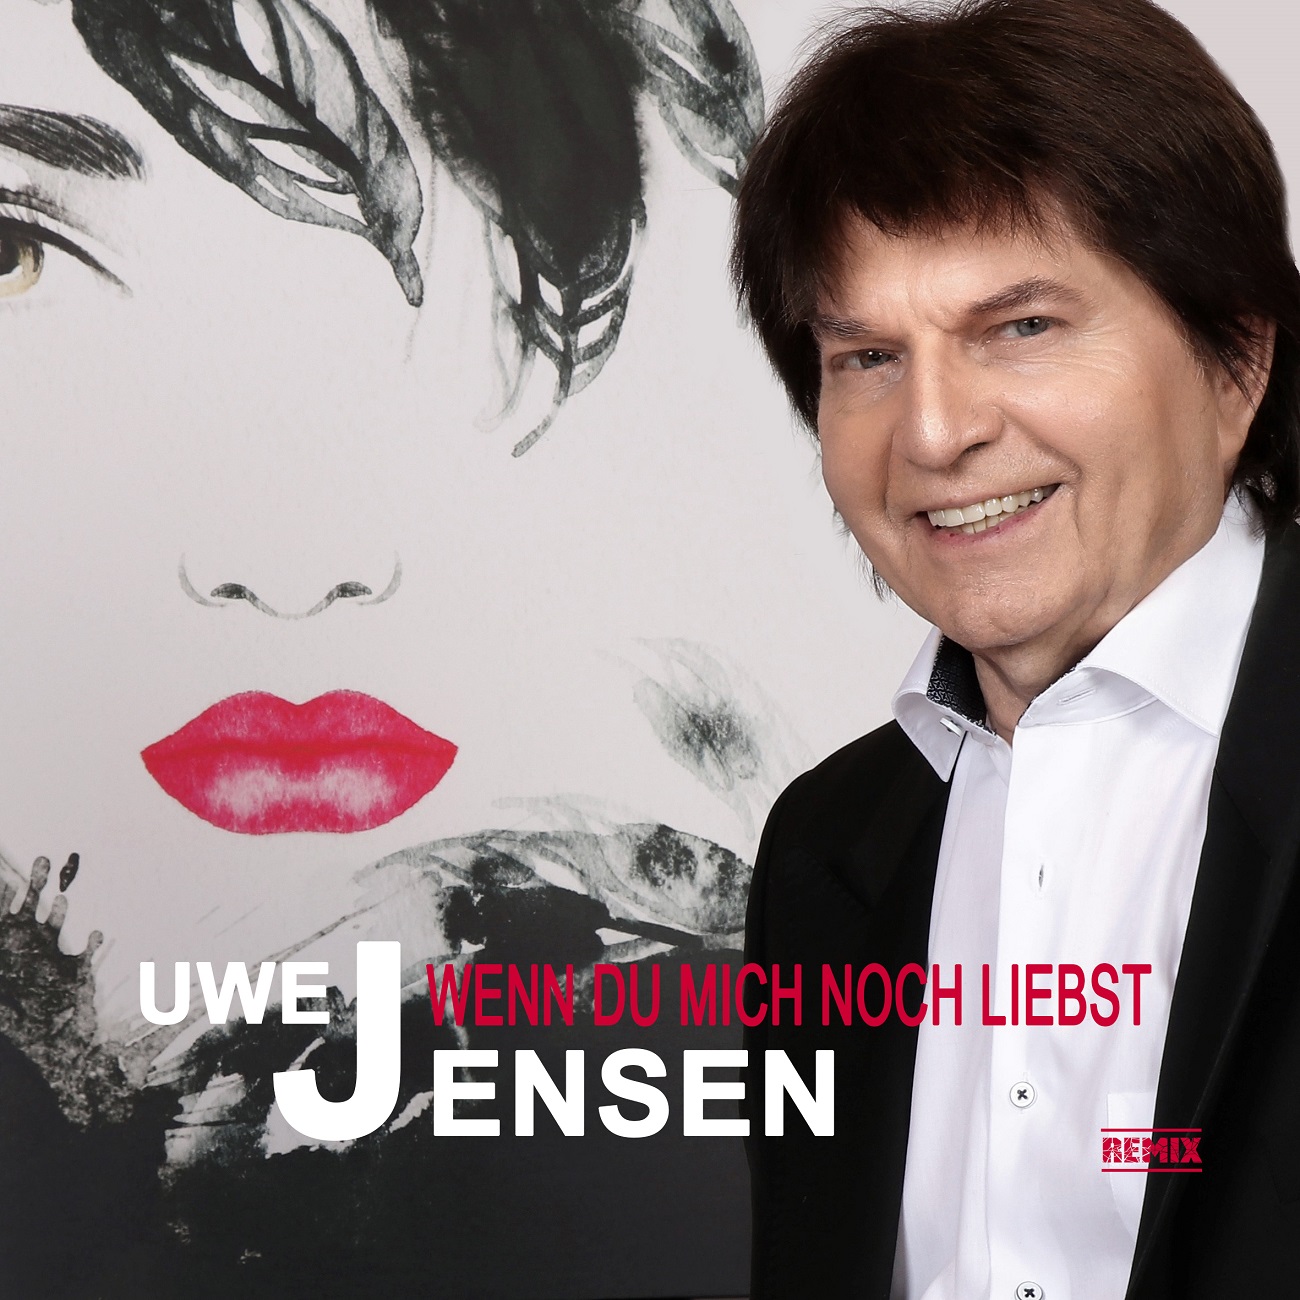 Uwe Jensen - Wenn Du mich noch liebst - Cover.jpg